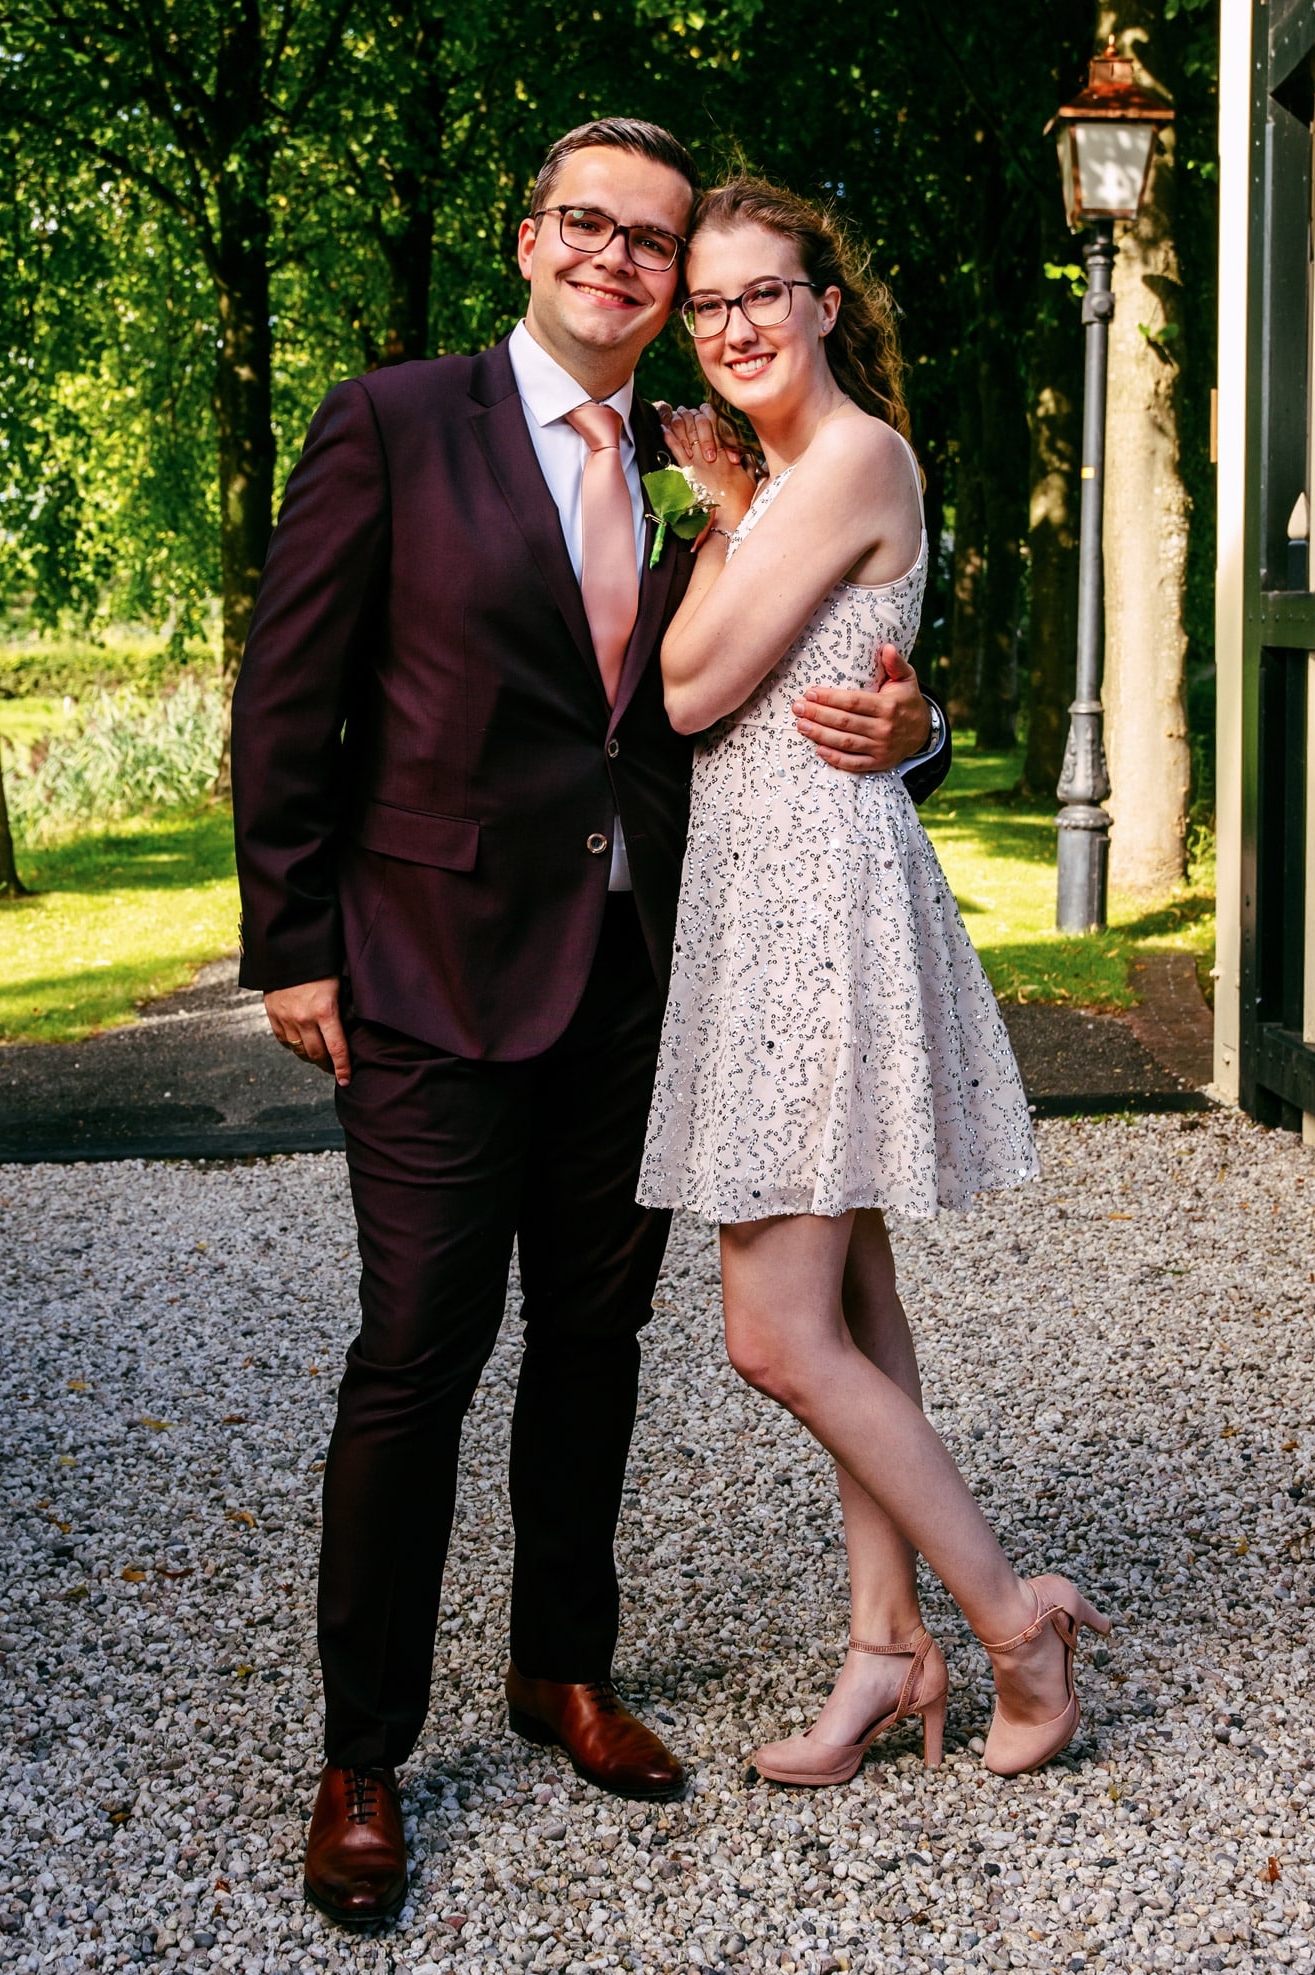 Een man in een pak en een vrouw in een jurk, beiden gekleed in casual chique kleding.